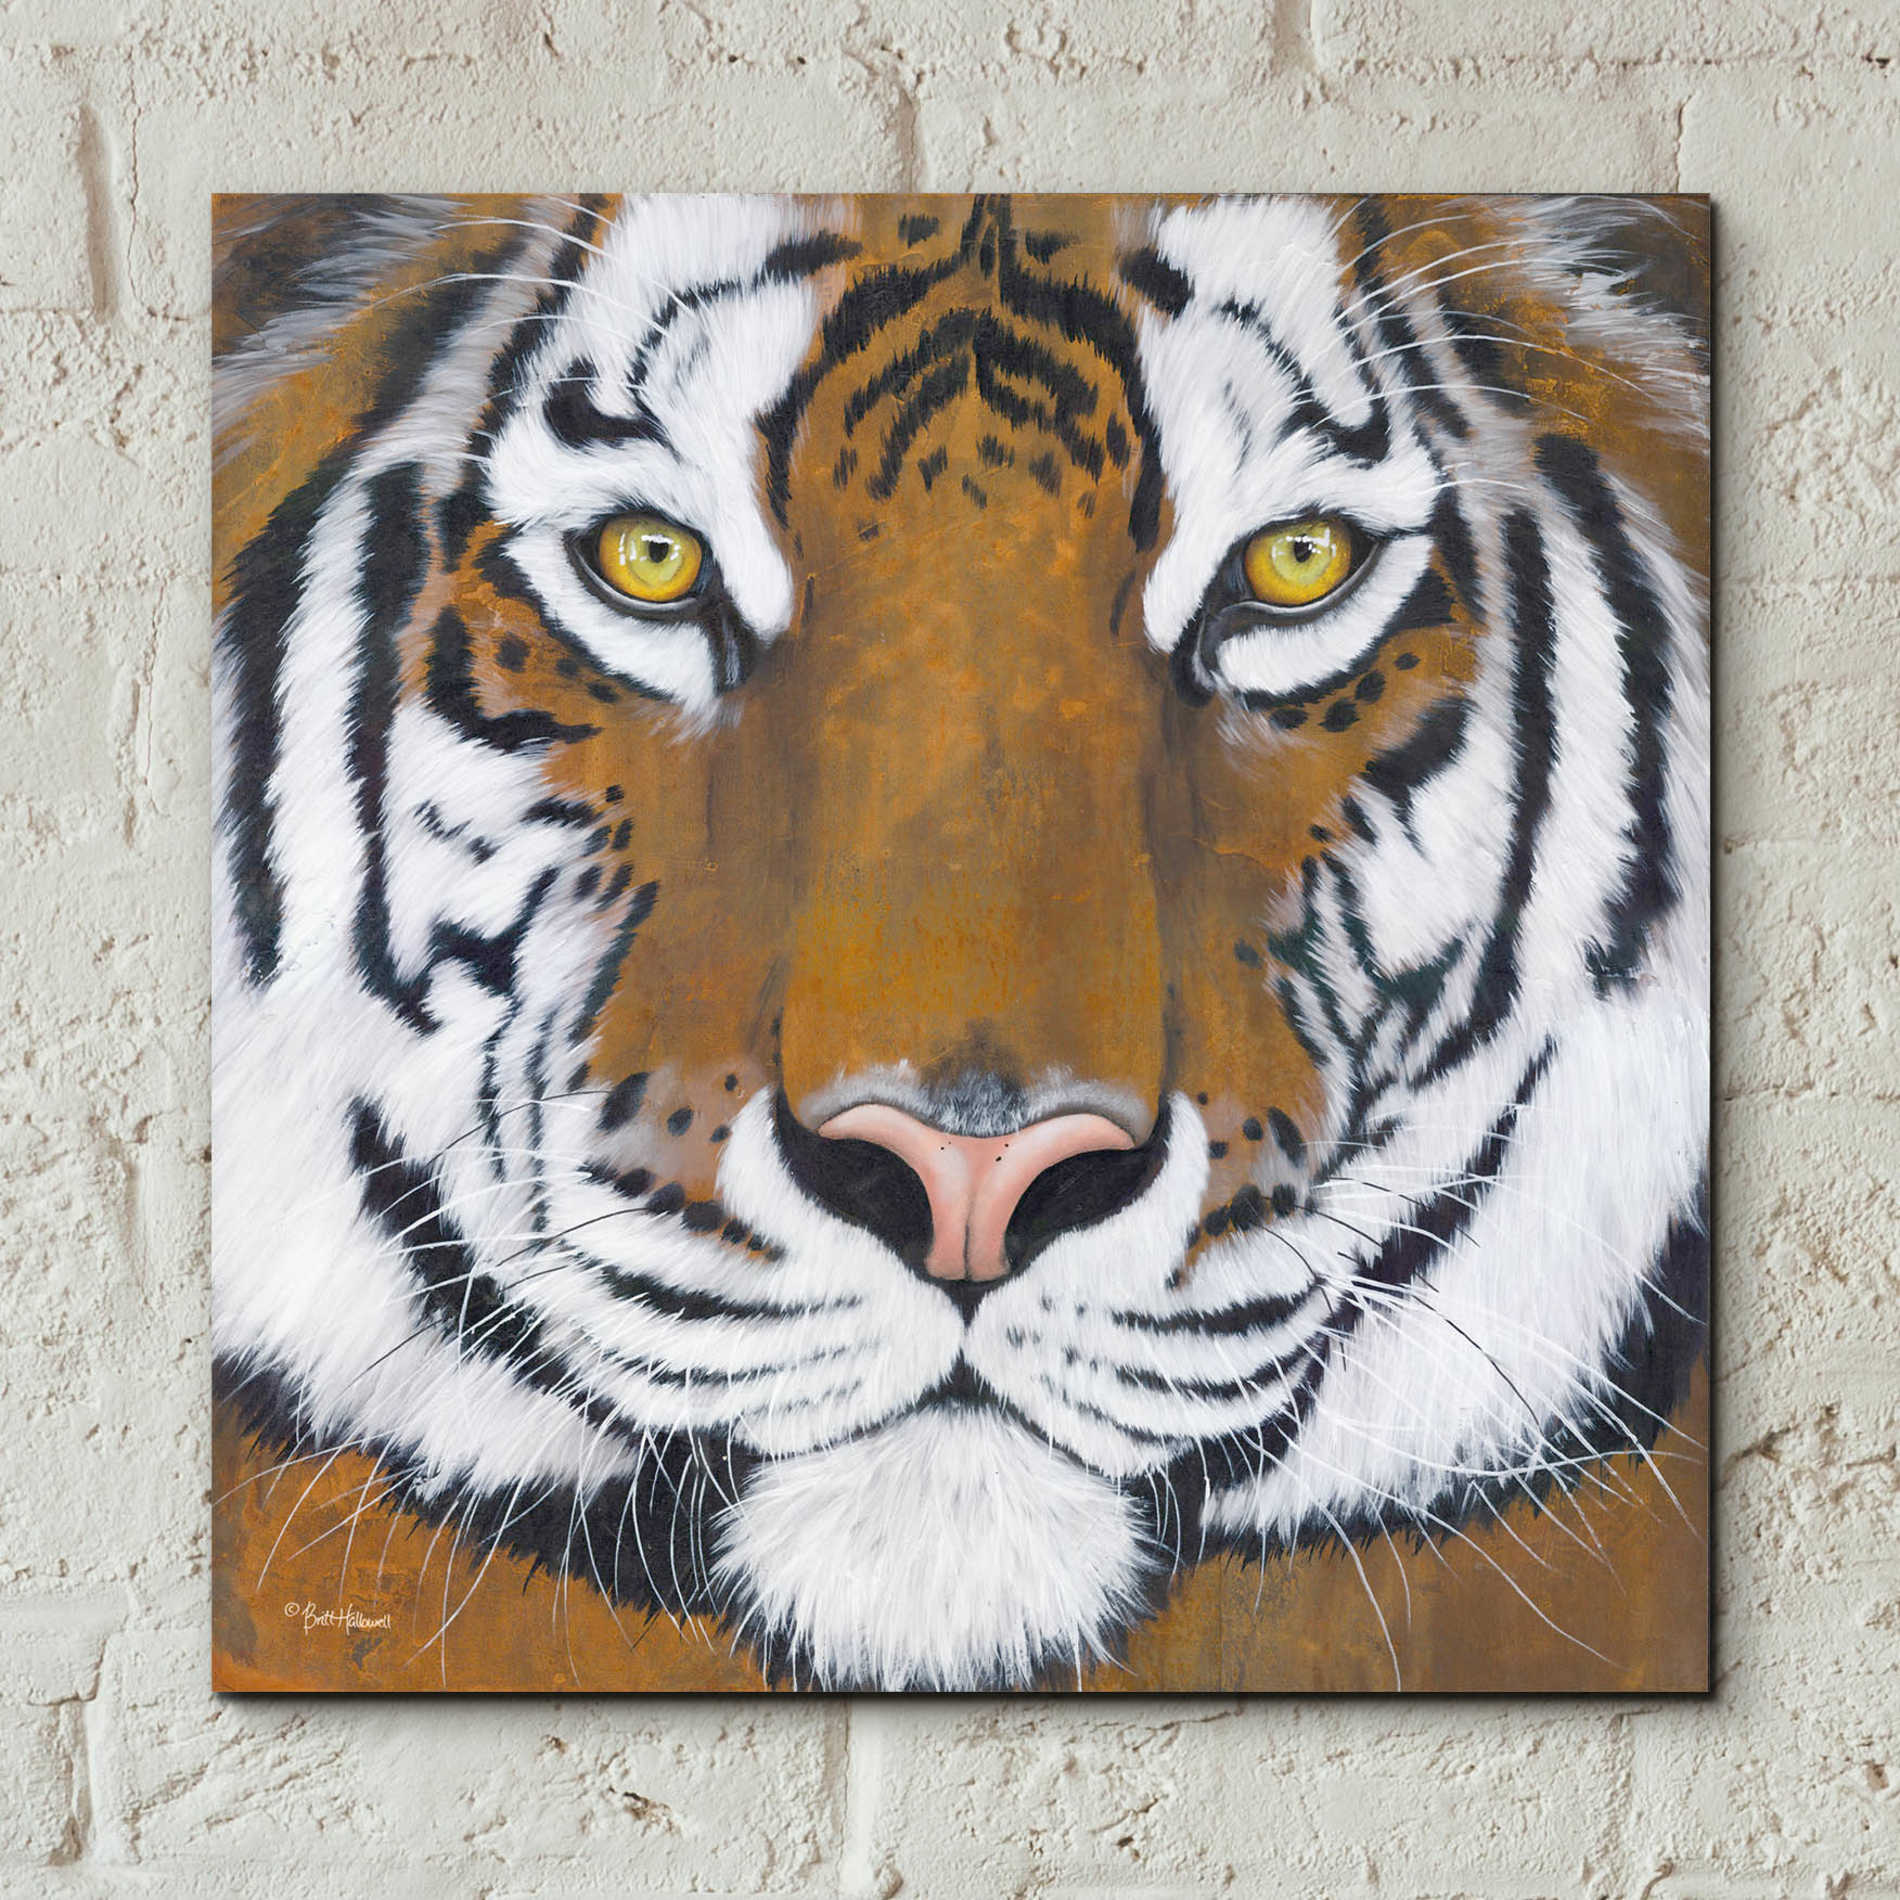 Epic Art 'Tiger Gaze' by Britt Hallowell, Acrylic Glass Wall Art,12x12